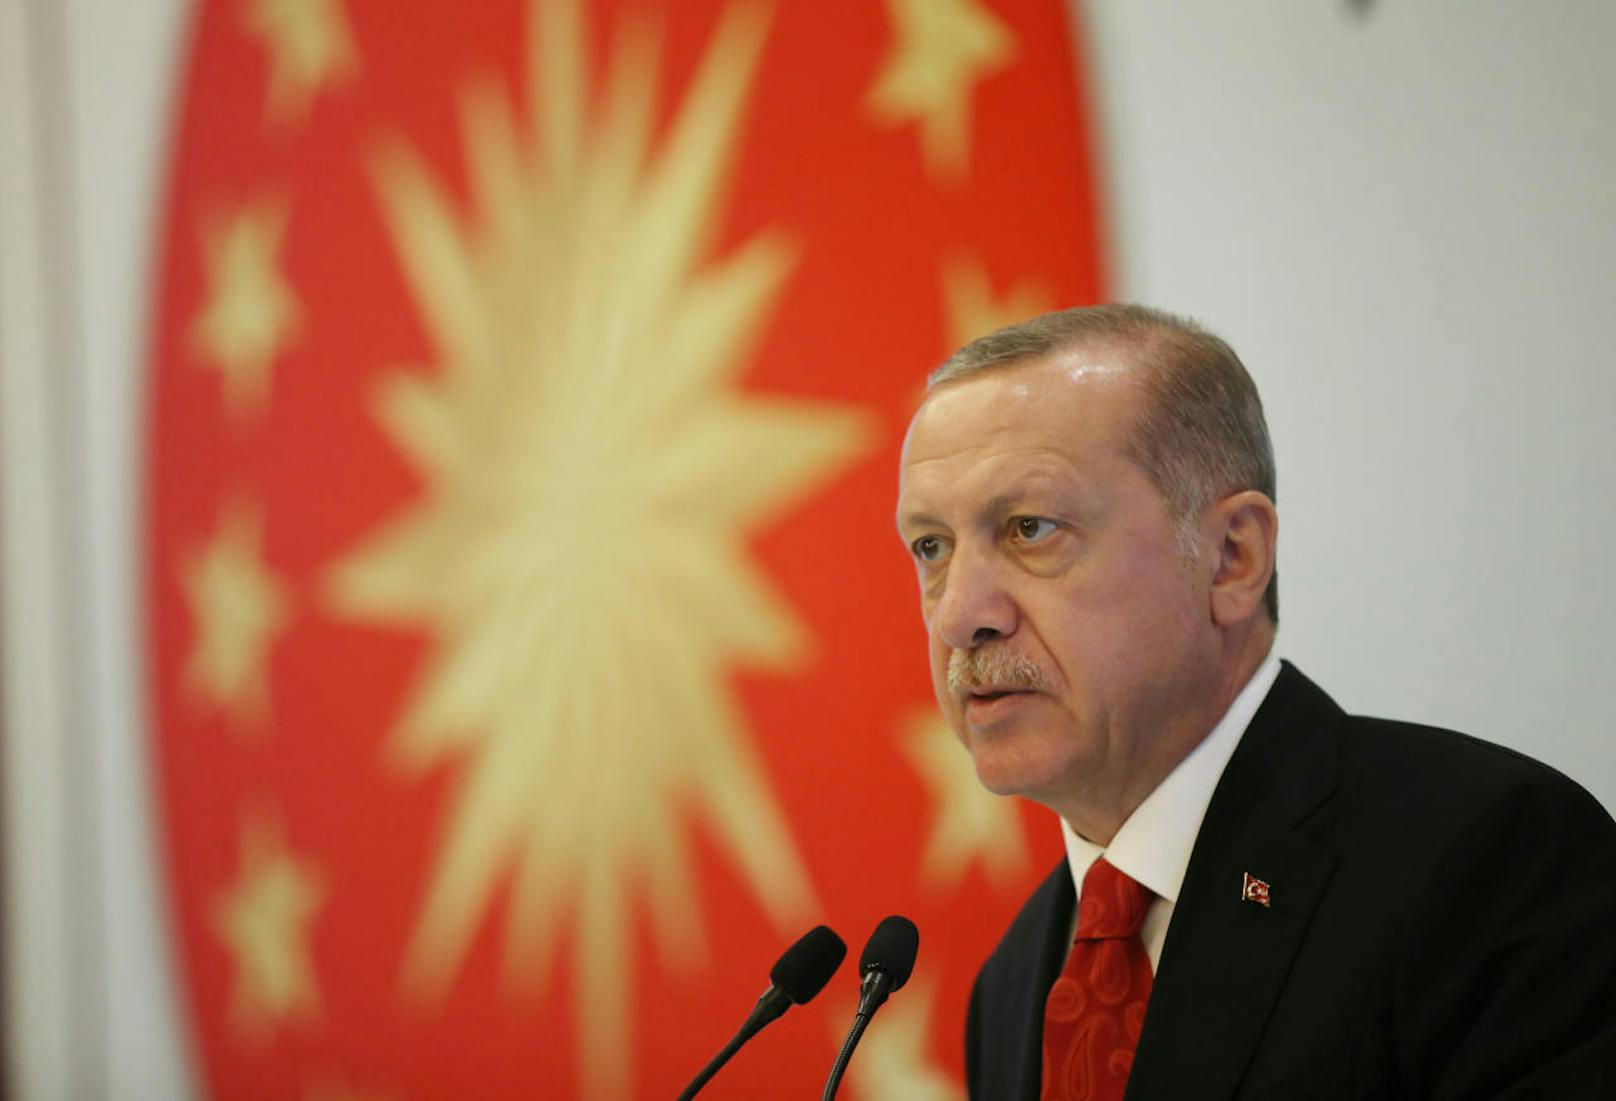 Die Türkei droht den USA damit, die Partnerschaft zu kündigen: Recep Tayyip Erdogan.